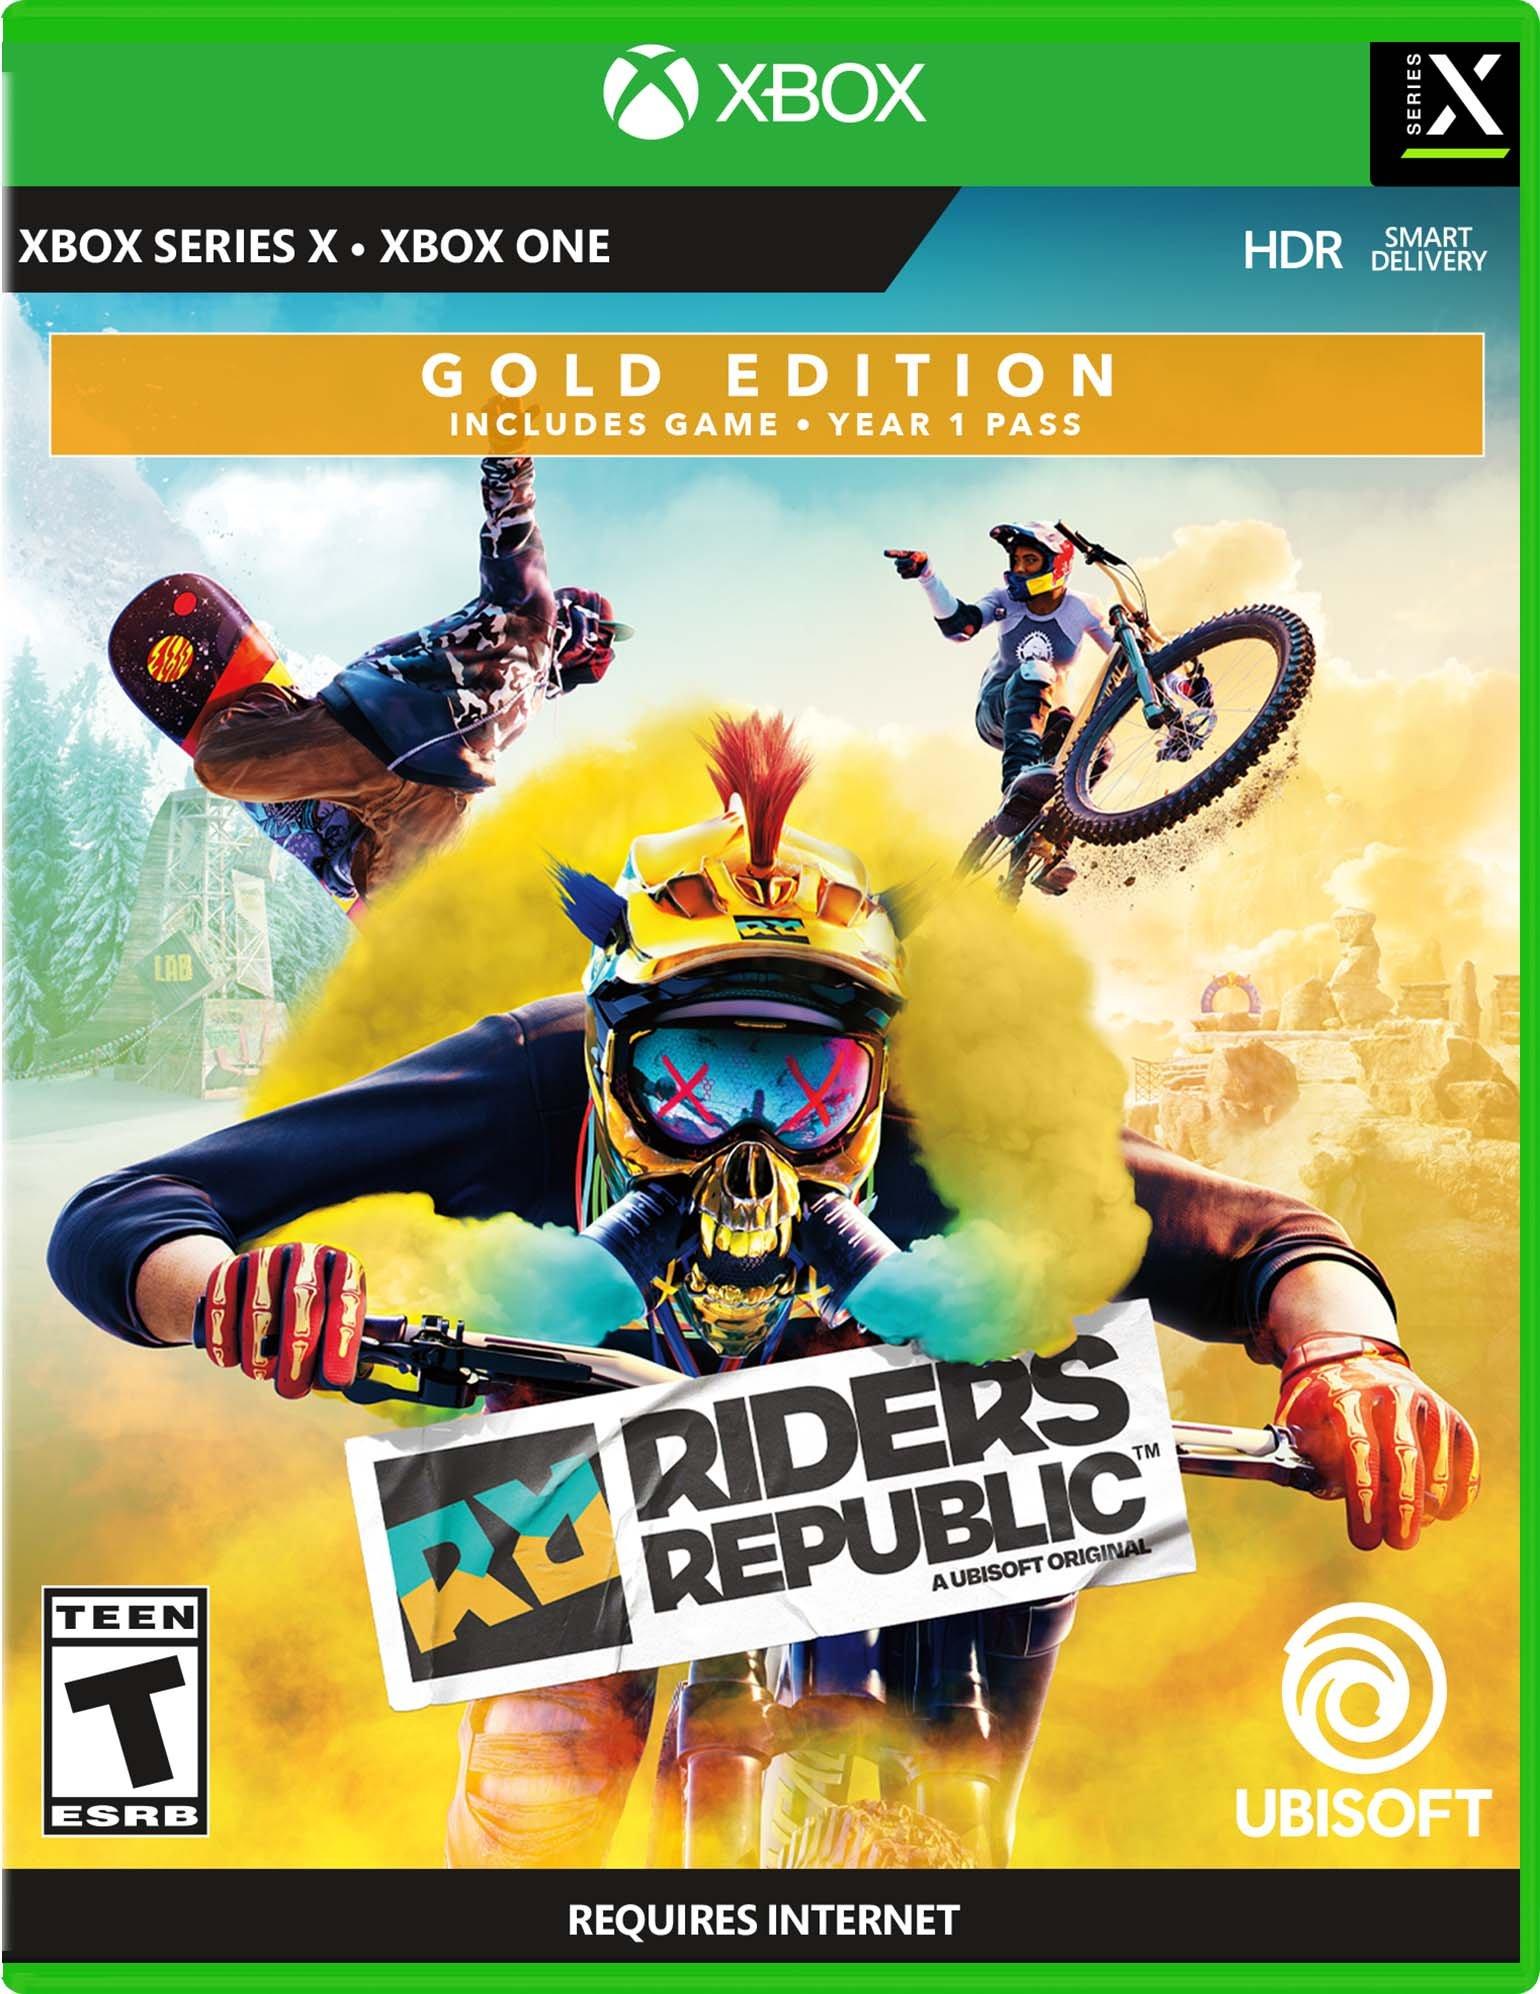 Riders Republic™ Skate Edition Edição Skate por PC,PS4/PS5